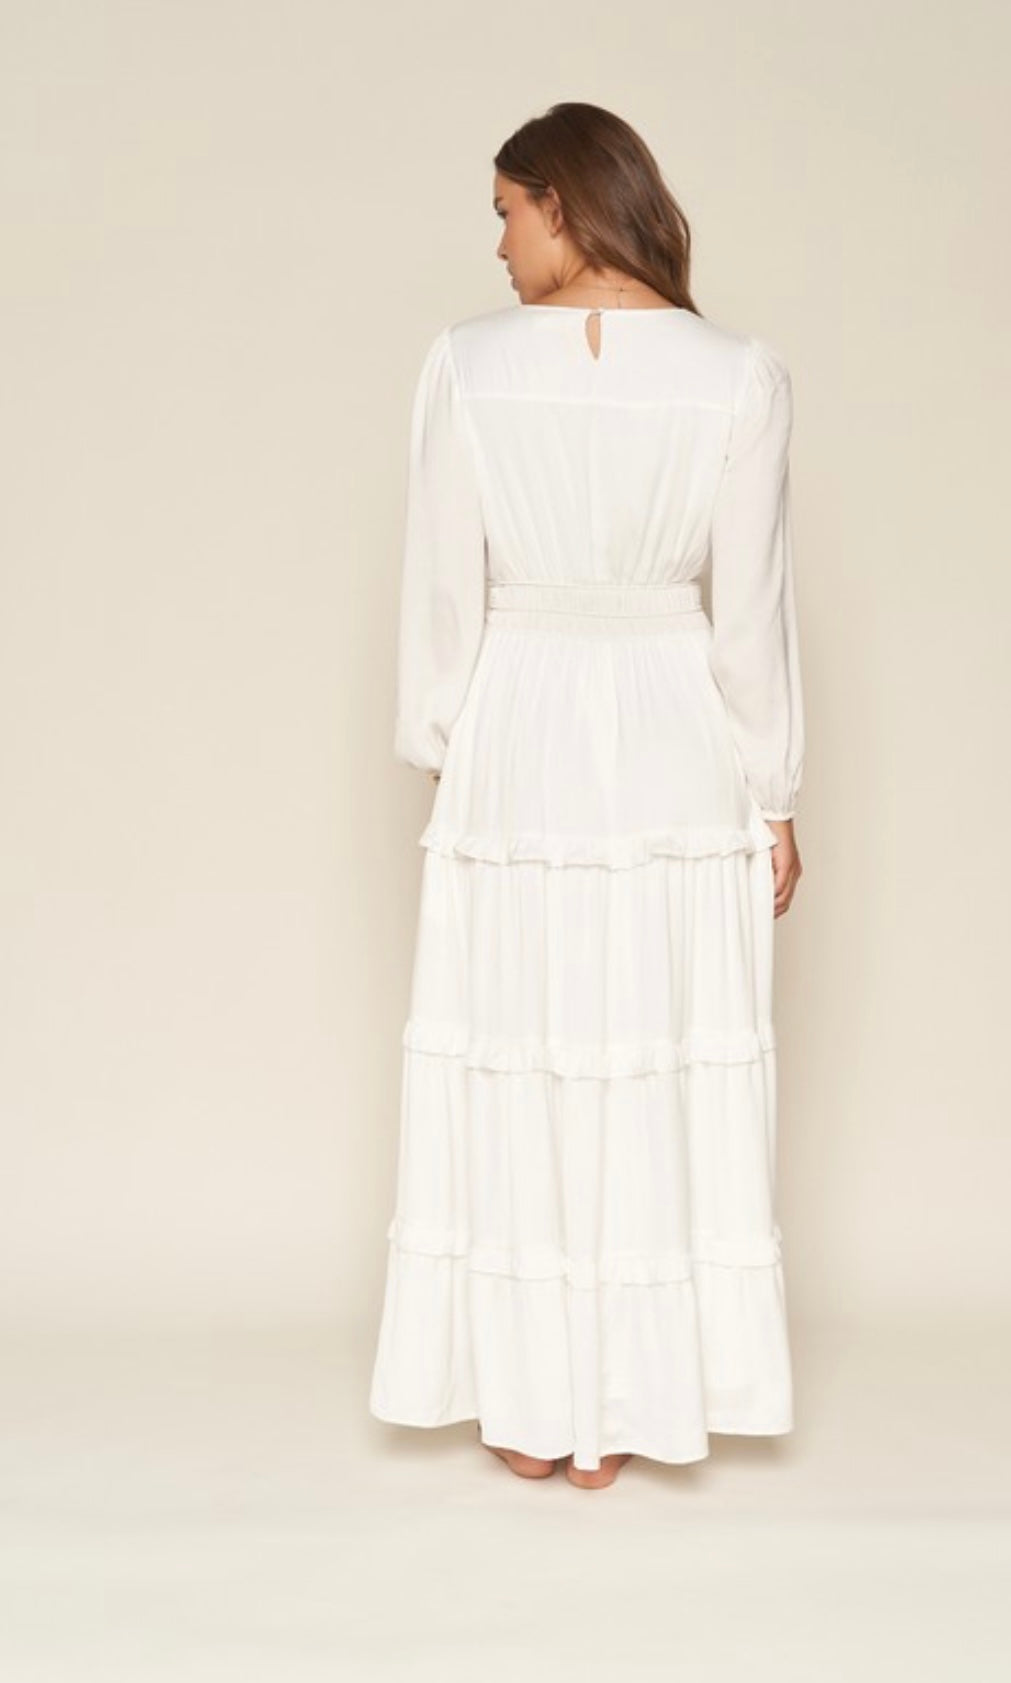 The Genevieve White Maxi Dress